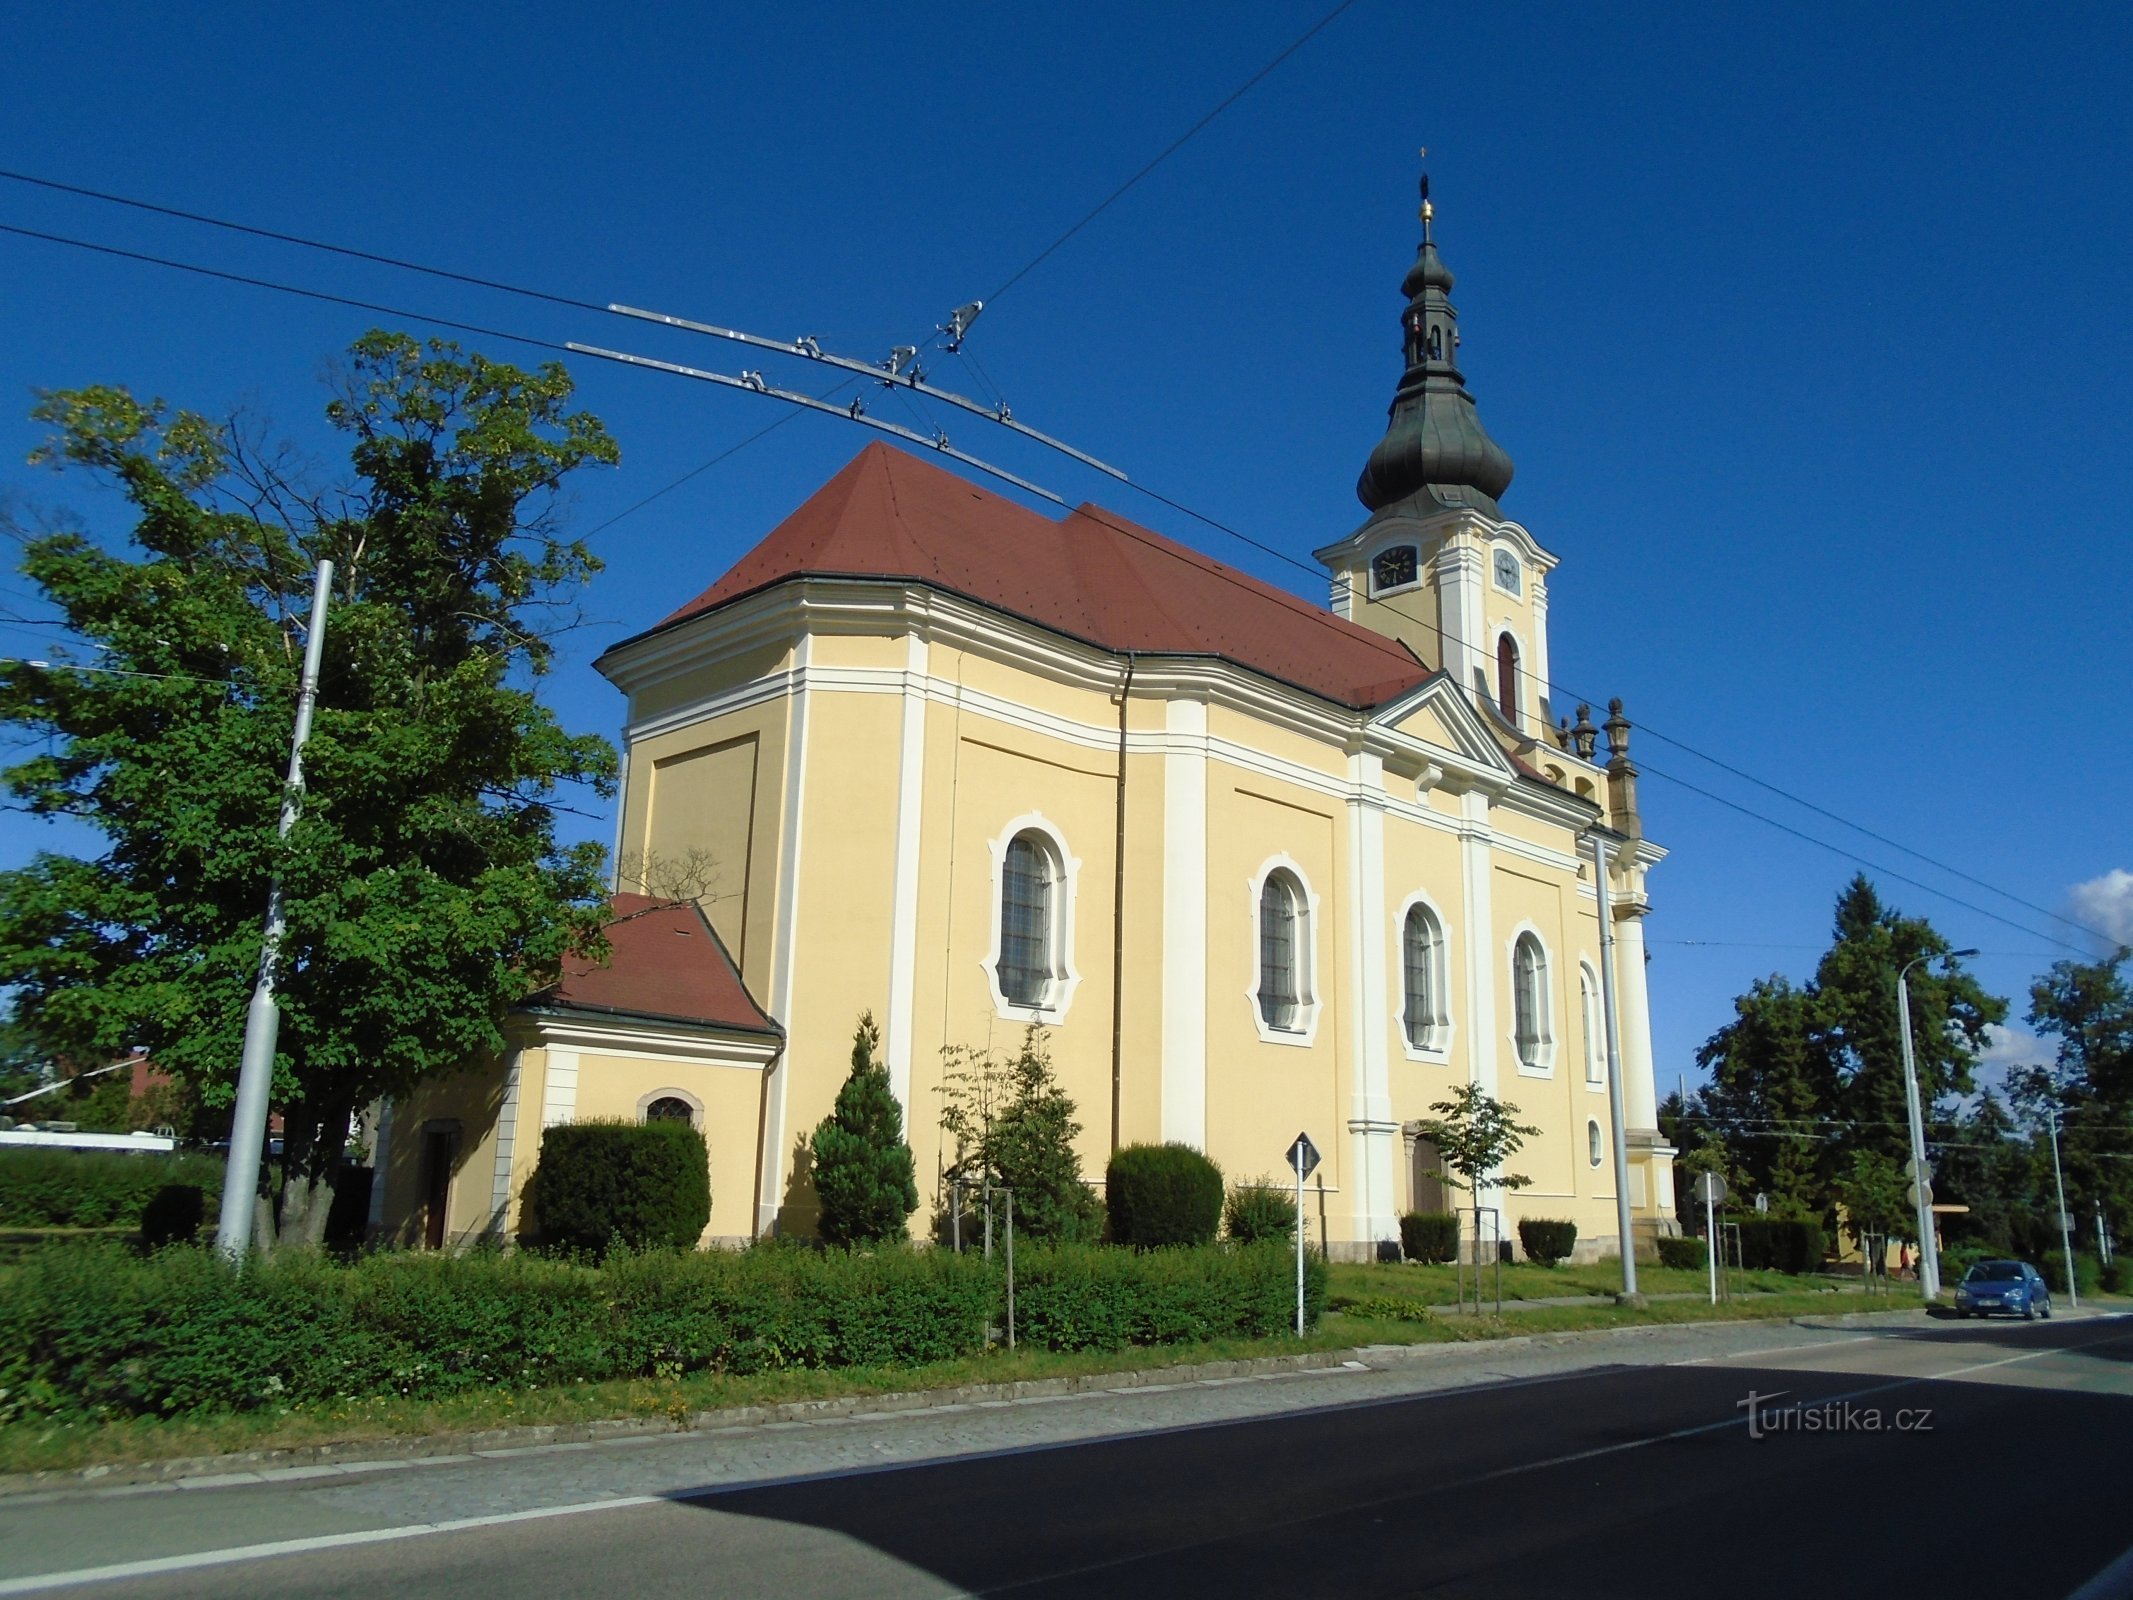 圣教堂Antonína, Hradec Králové，1.7.2018 年 XNUMX 月 XNUMX 日）